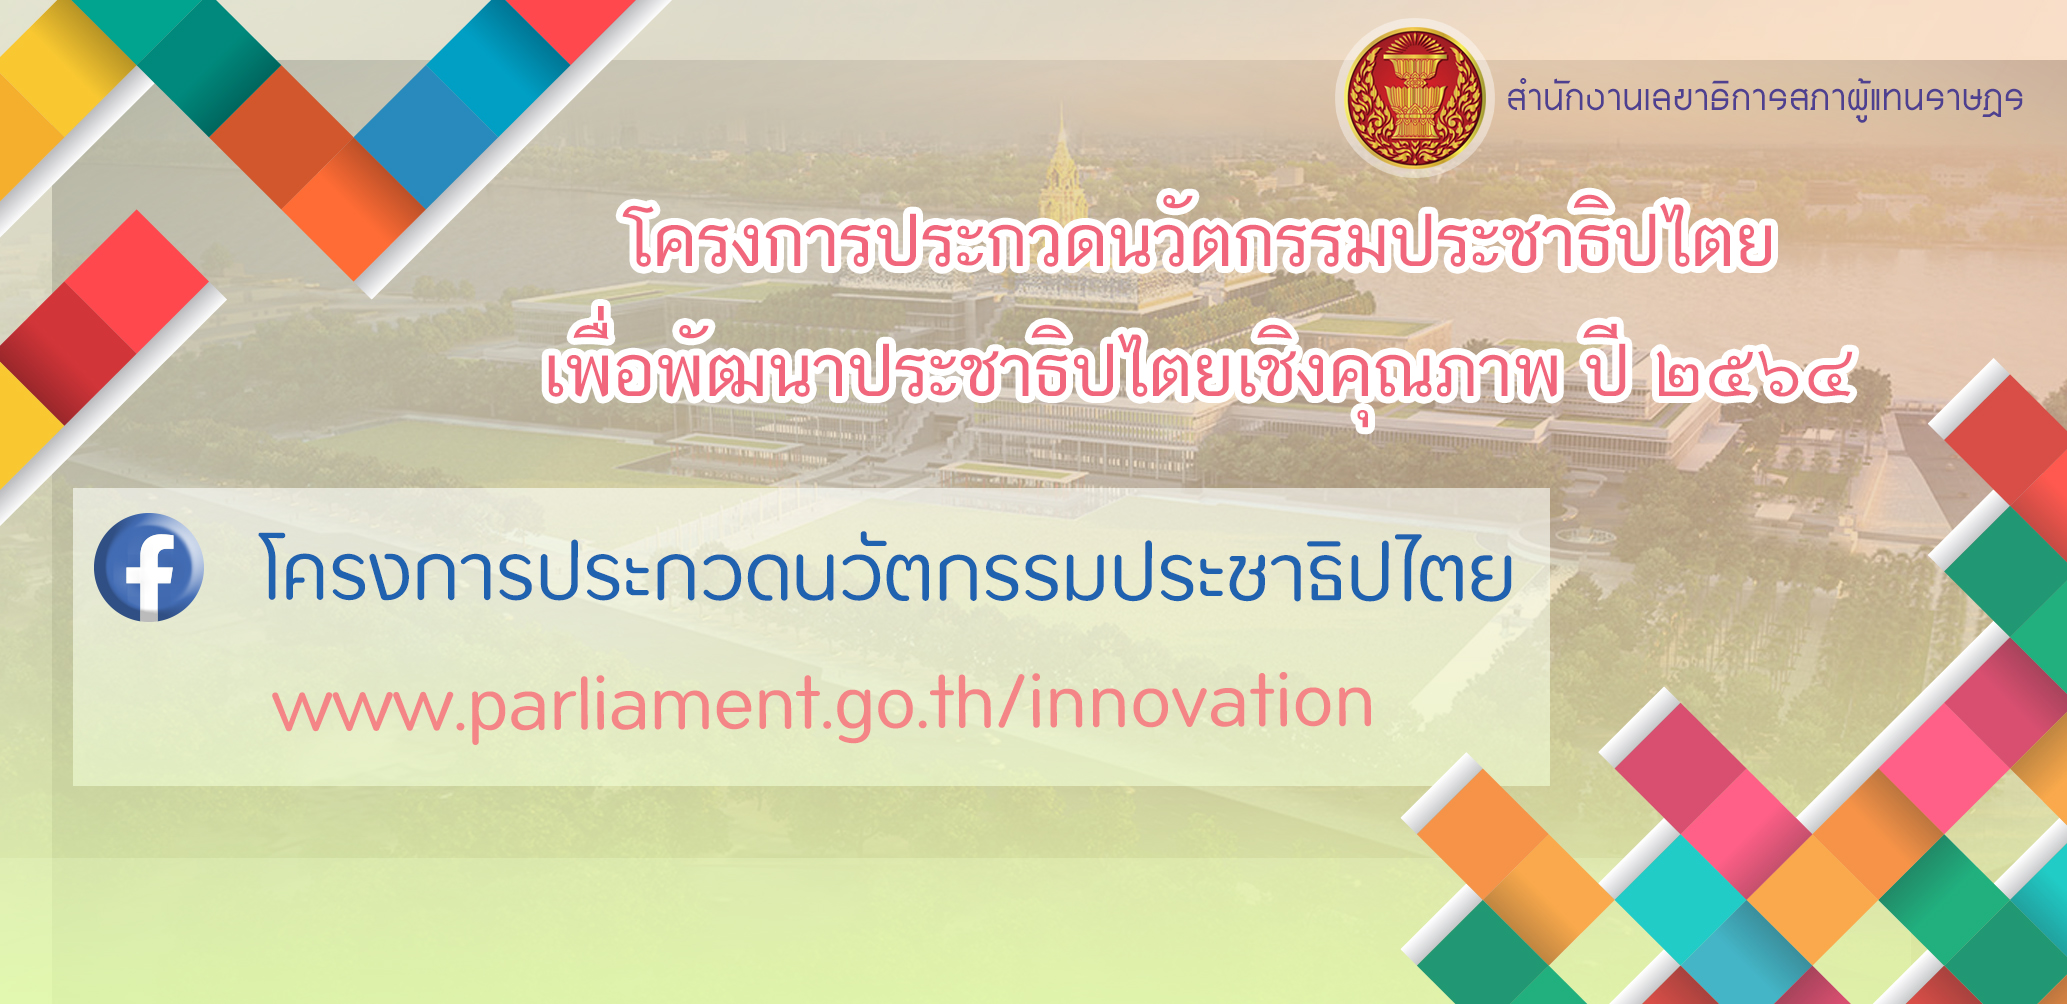 โครงการประกวดนวัตกรรมประชาธิปไตยเพื่อพัฒนาประชาธิปไตยเชิงคุณภาพ สำนักงานเลขาธิการสภาผู้แทนราษฎร www.parliament.go.th/innovation